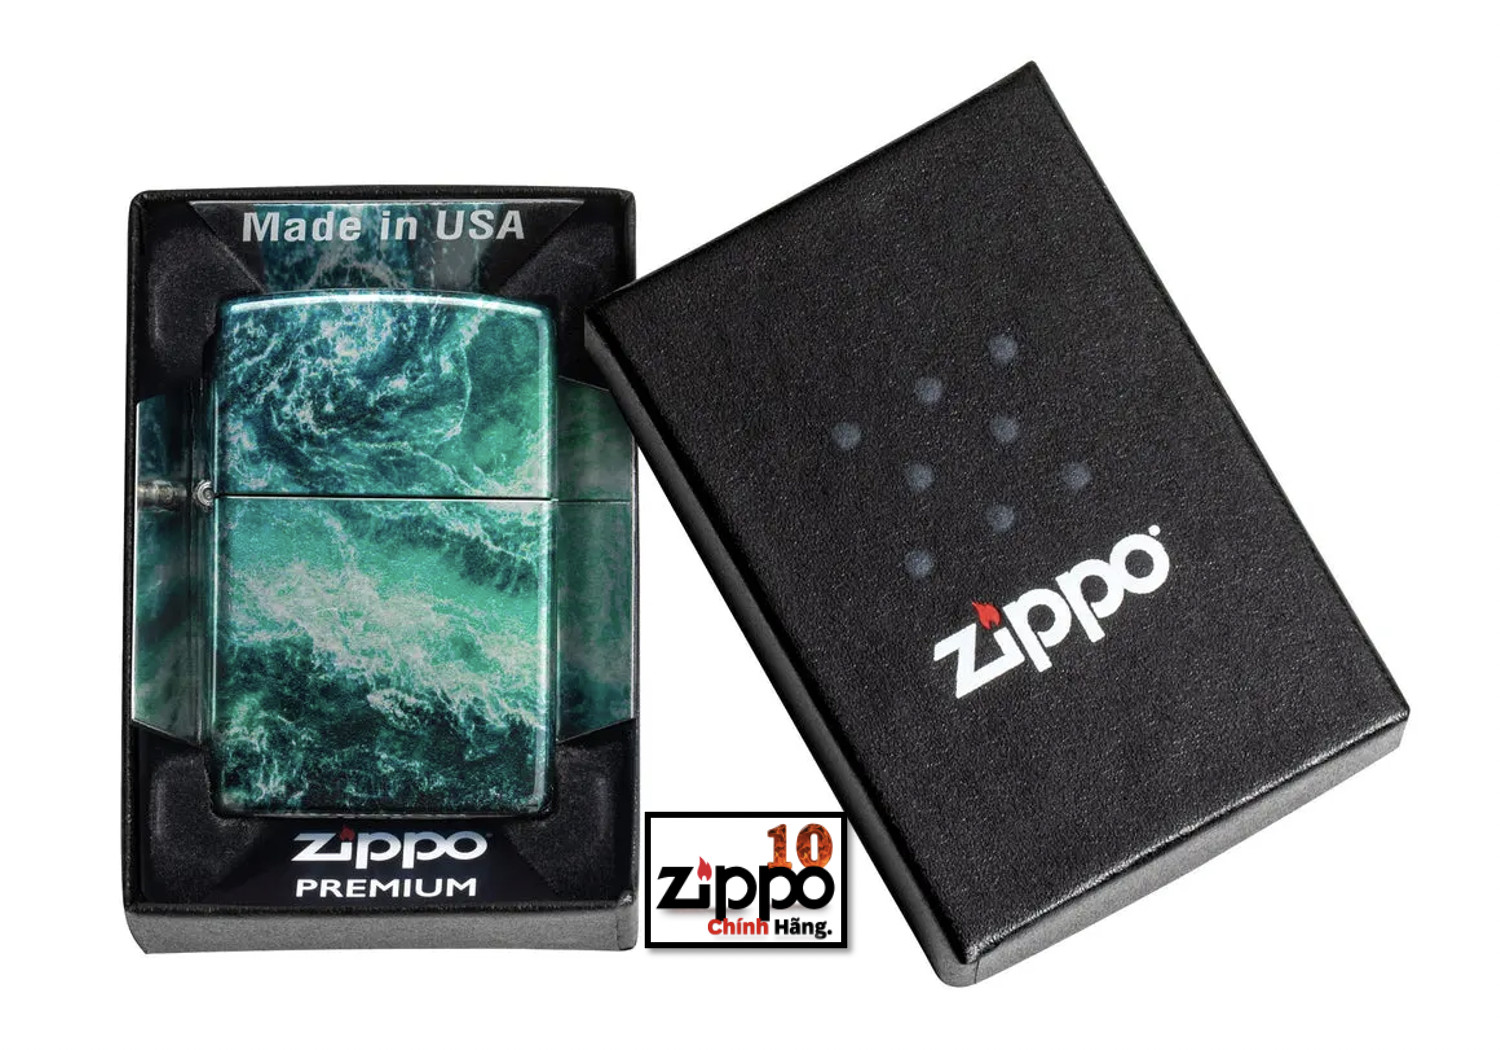 Bật lửa ZIPPO 48621 Rogue Wave Design - Chính hãng 100%